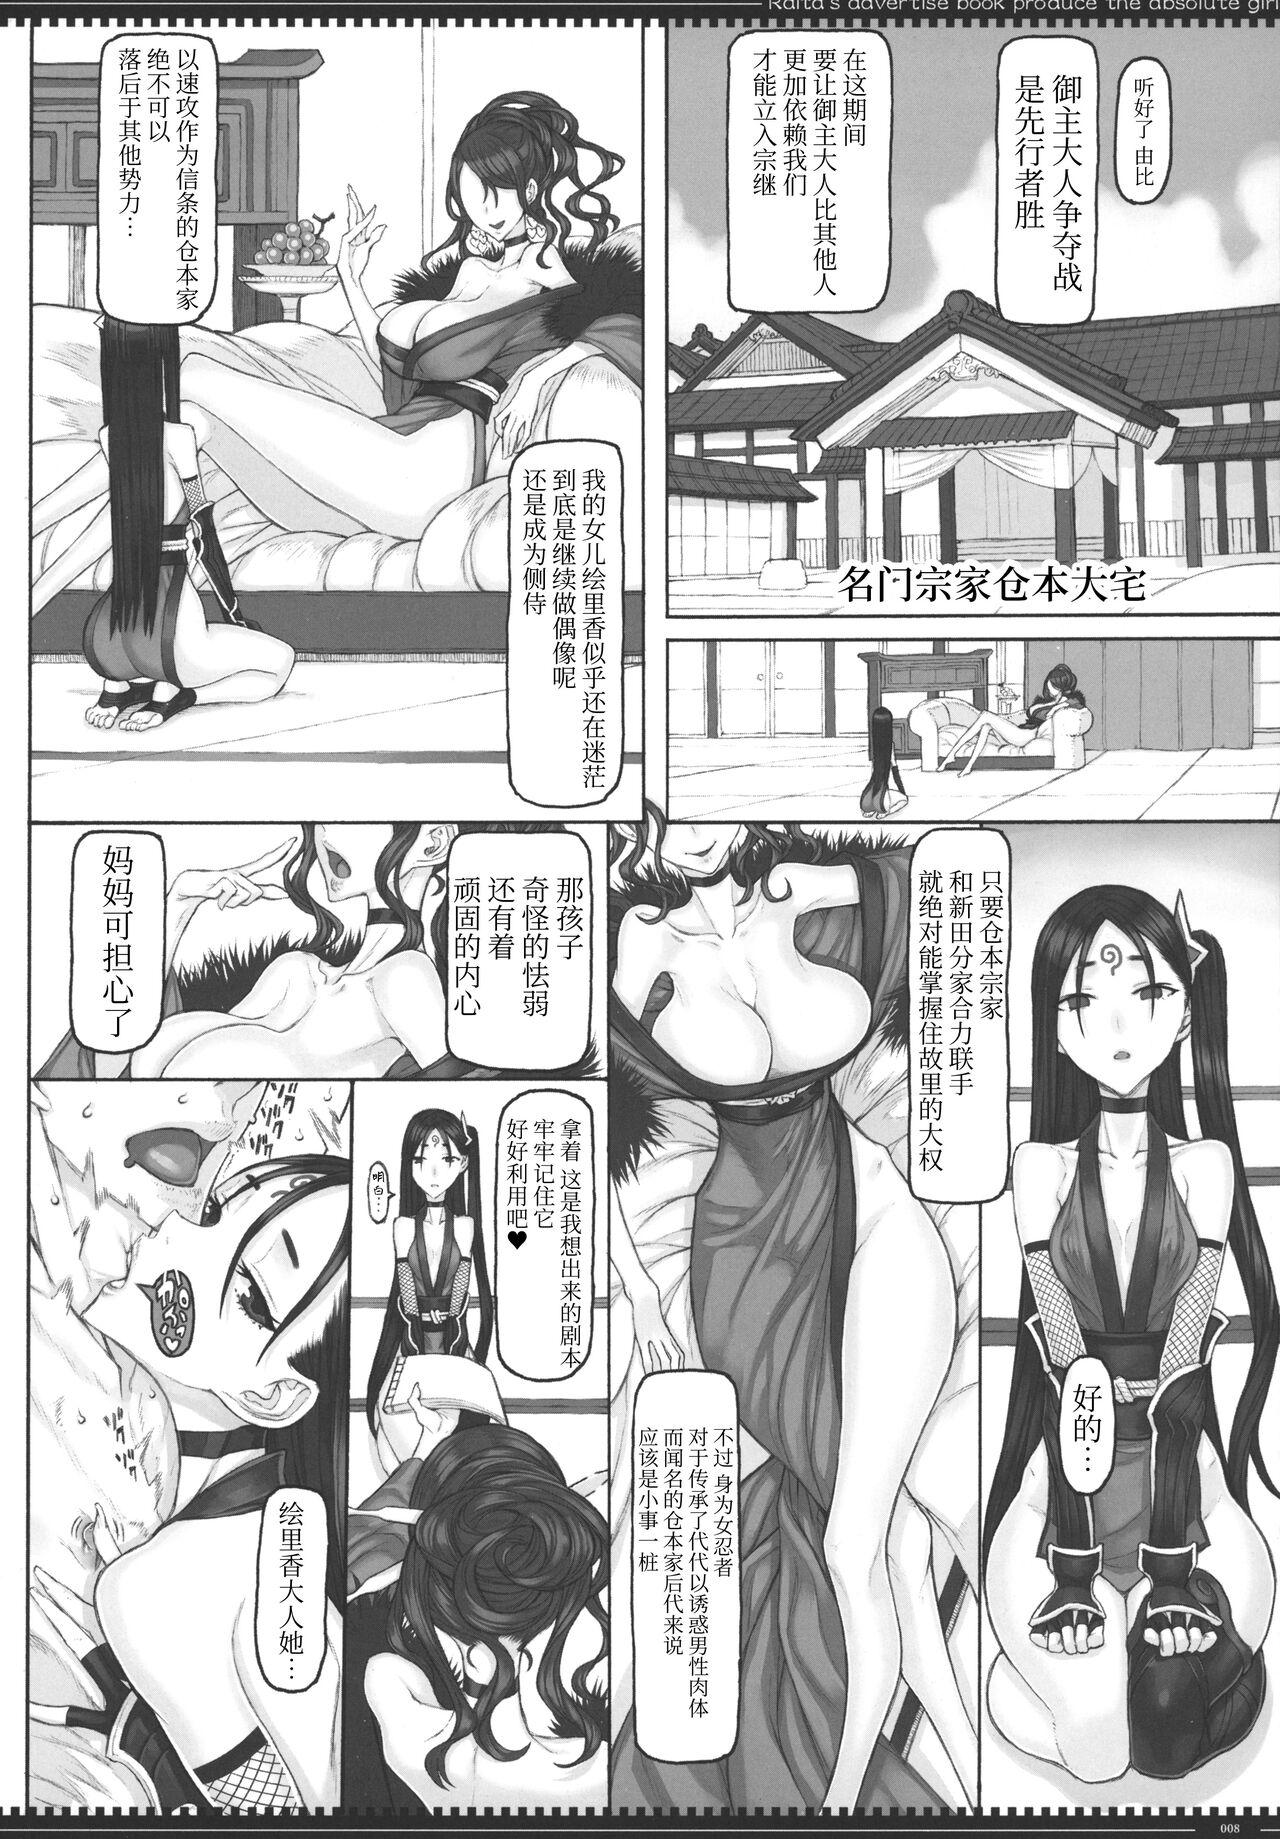 Seduction Porn Mahou Shoujo 22.0 + C101 Kaijou Gentei Orihon - Zettai junpaku mahou shoujo Stepson - Page 7